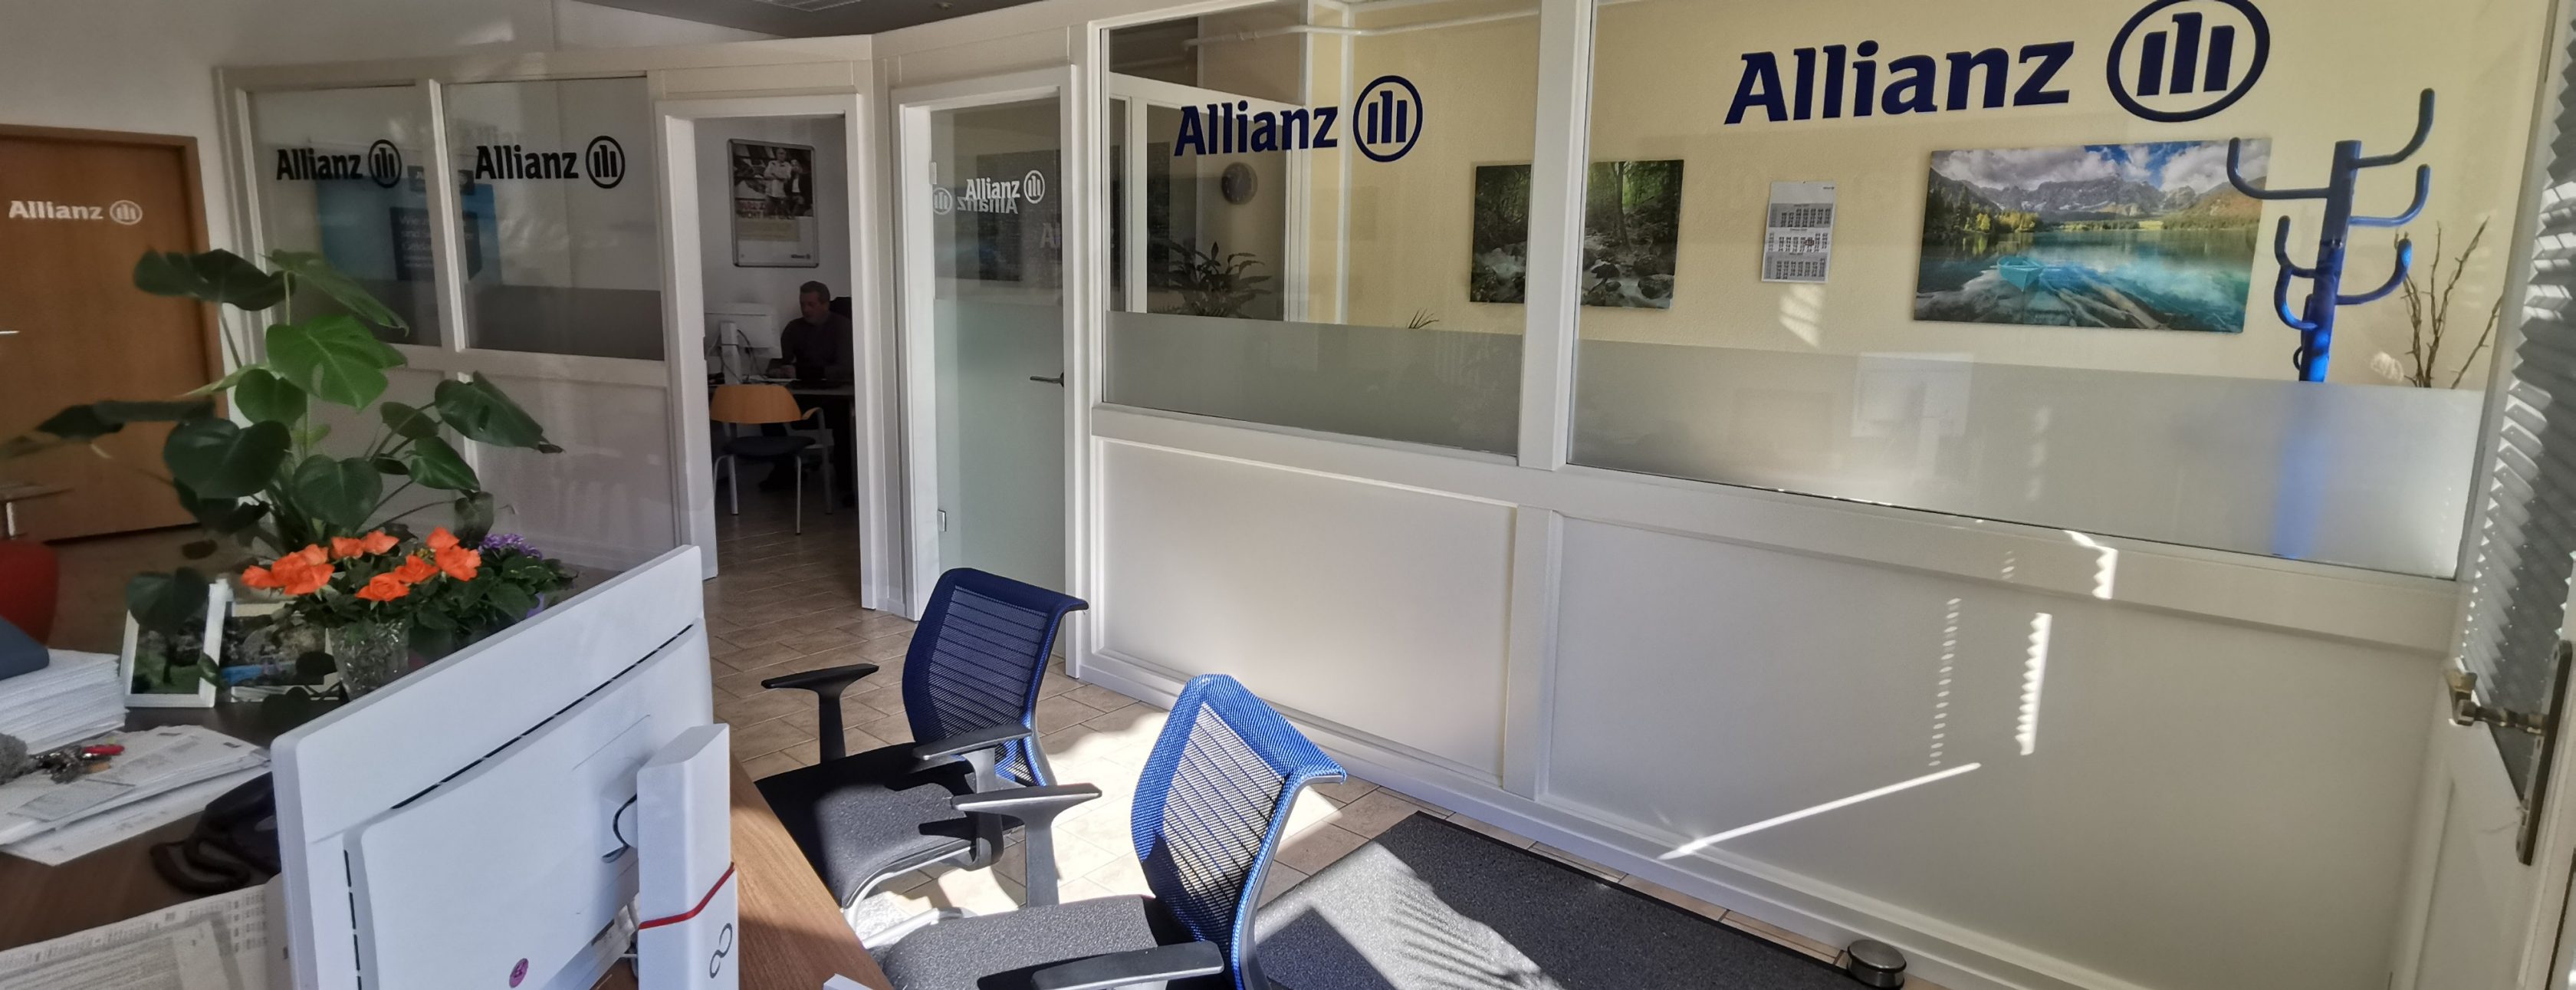 Allianz Versicherung Jens Gnielinski Dahme/Mark - Titelbild